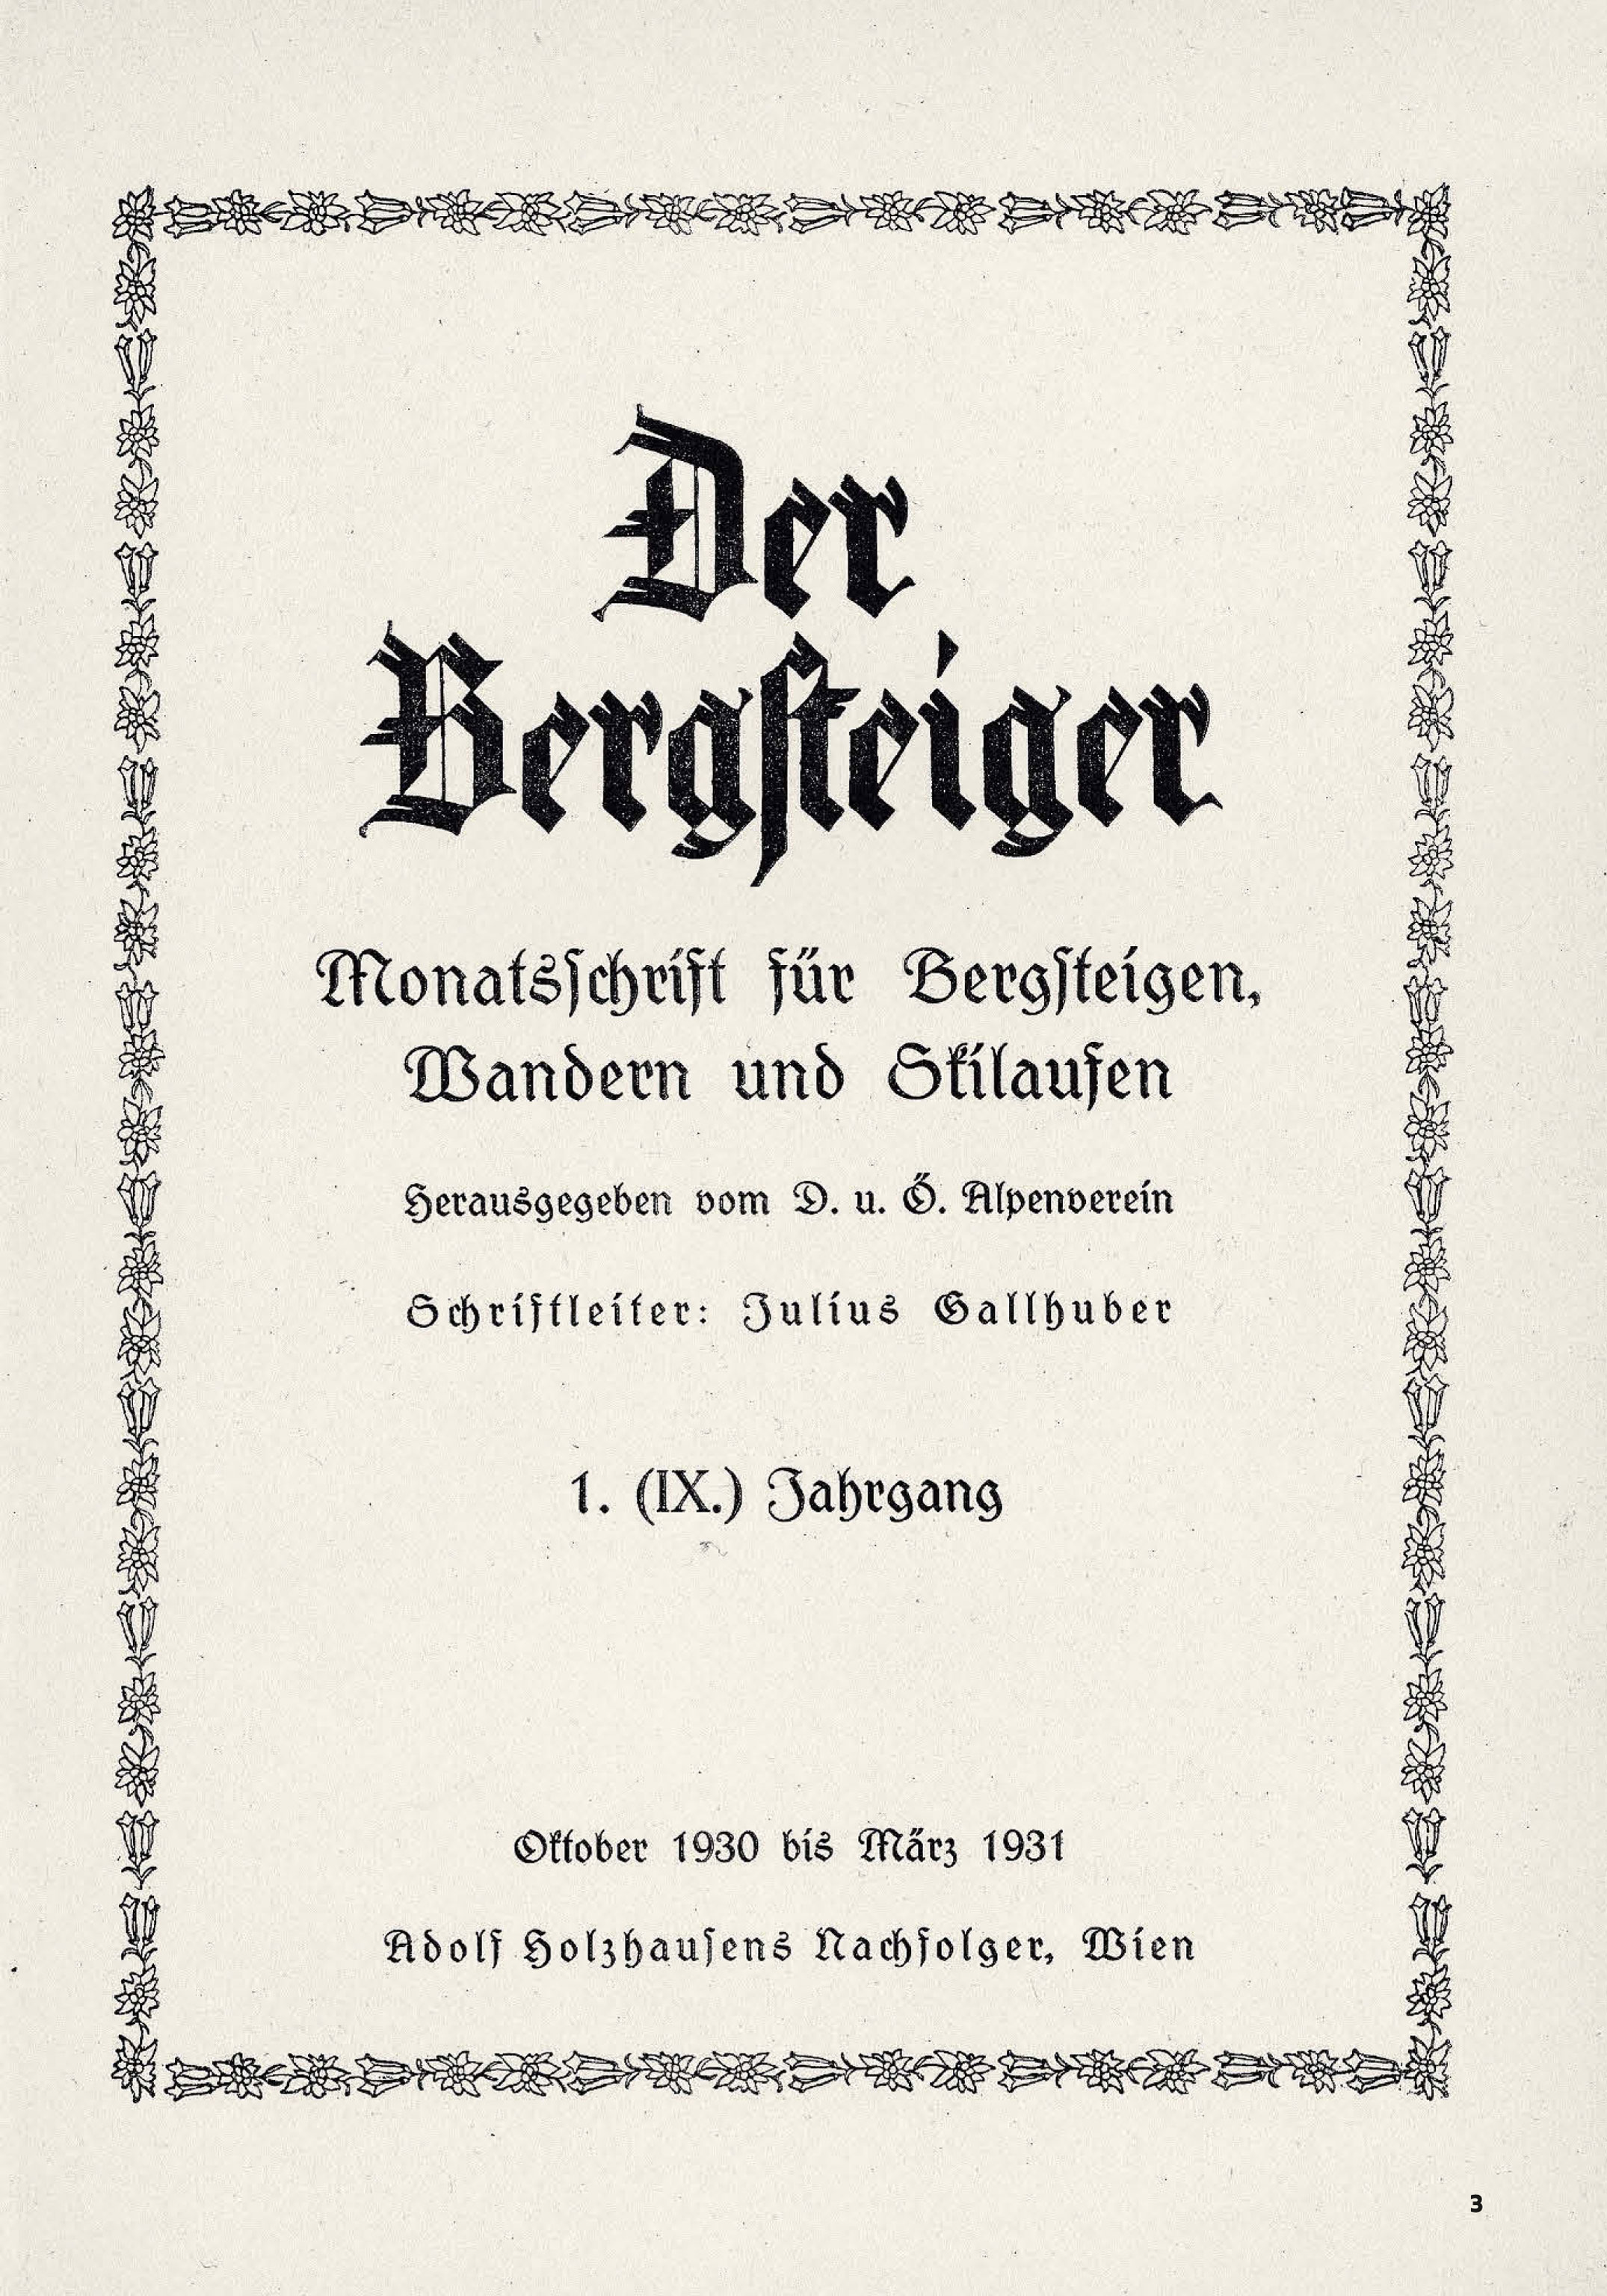 Bergsteiger magazine cover